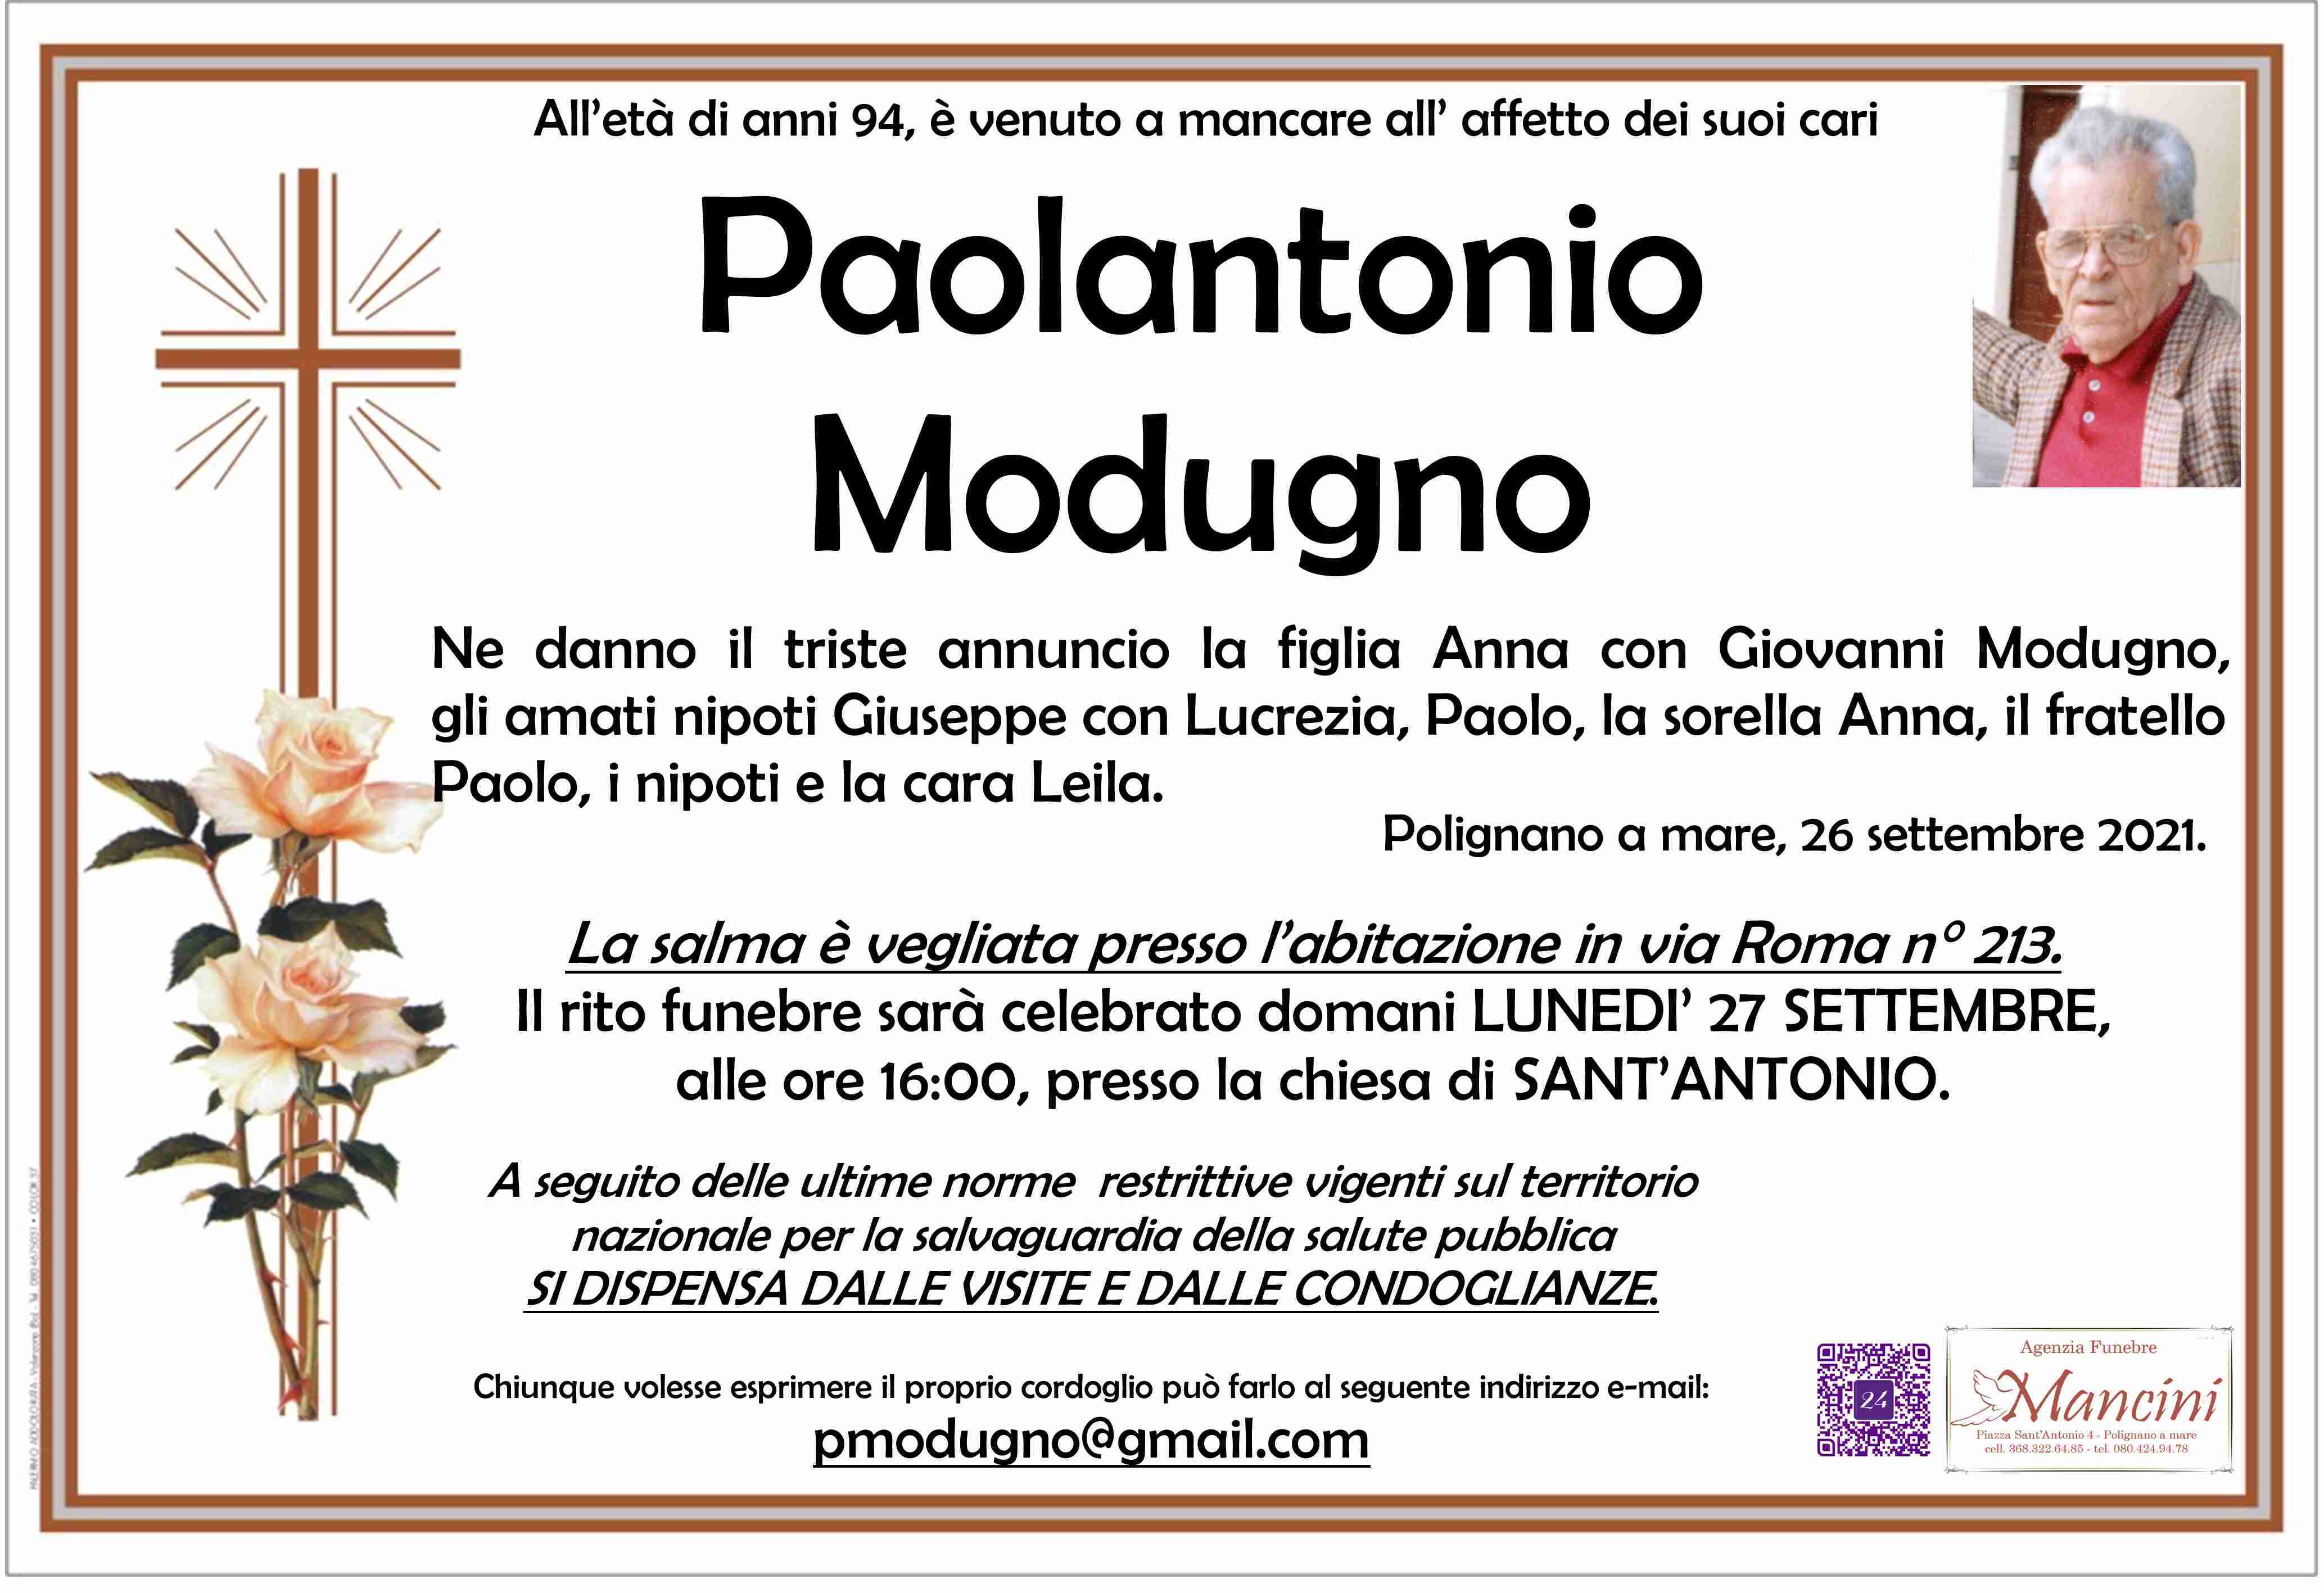 Paolantonio Modugno